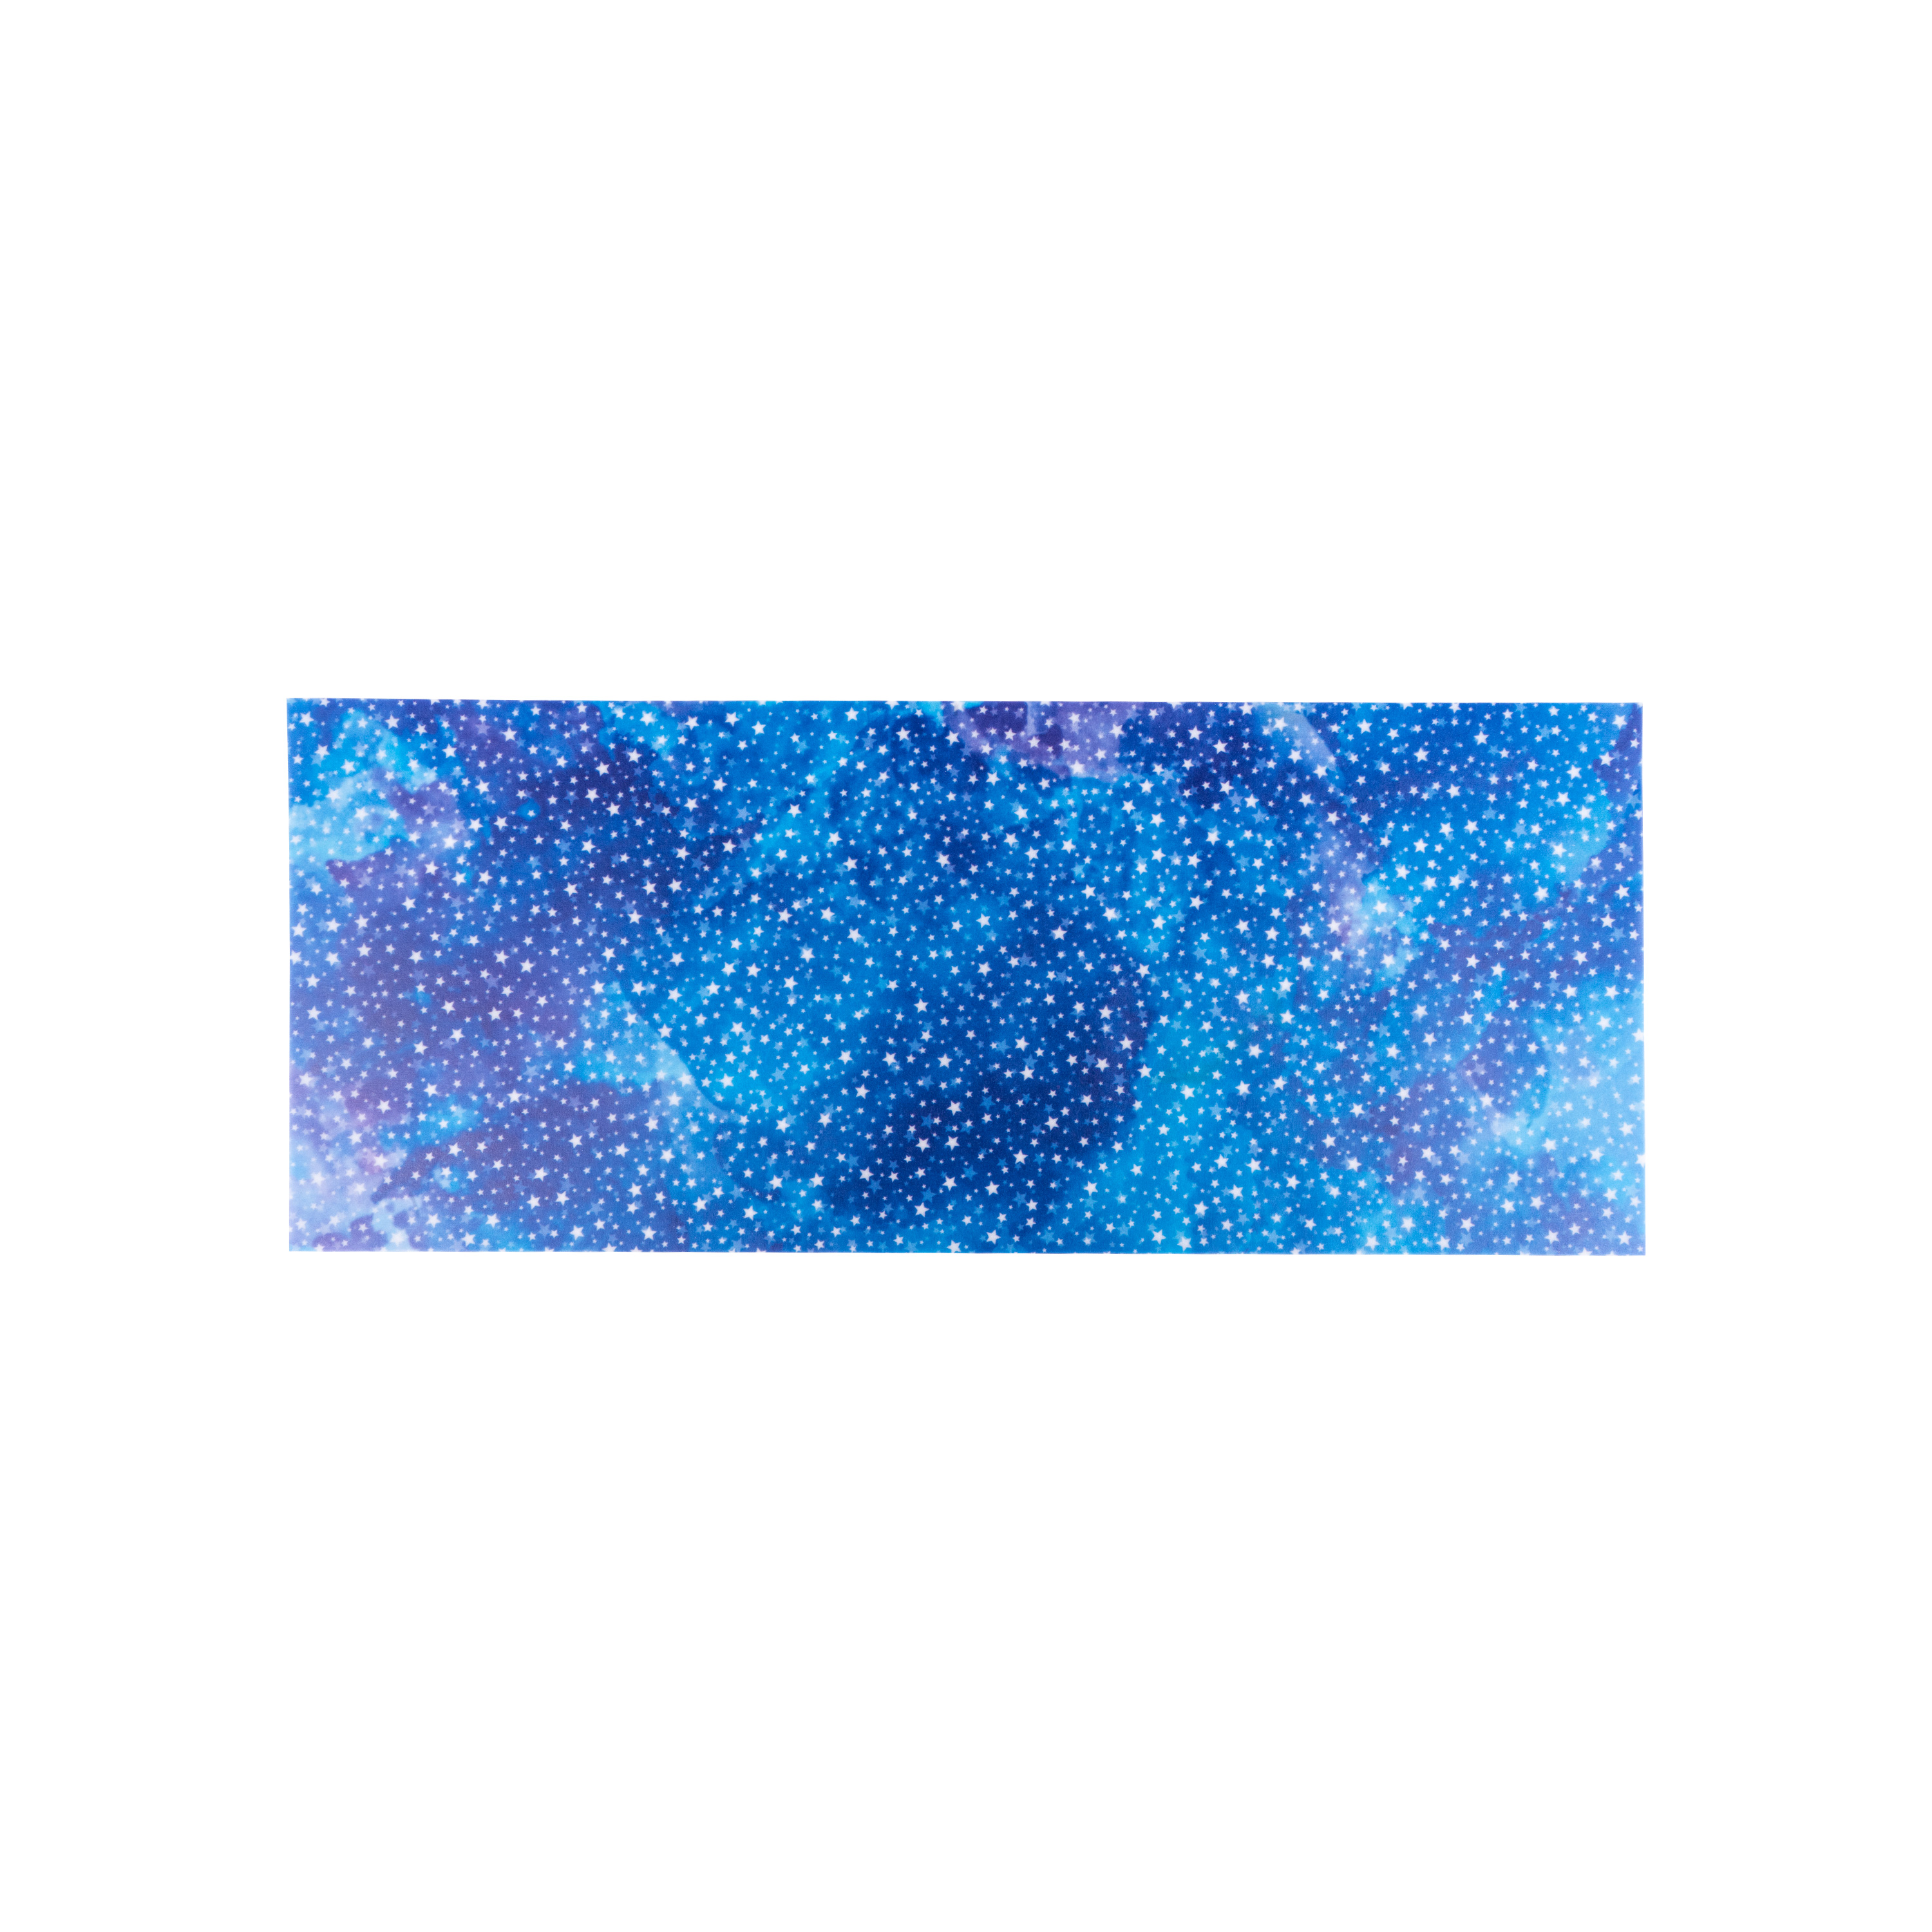 Laternenzuschnitte 'Sternennacht blau' für U3 Käsedosen Ø 11